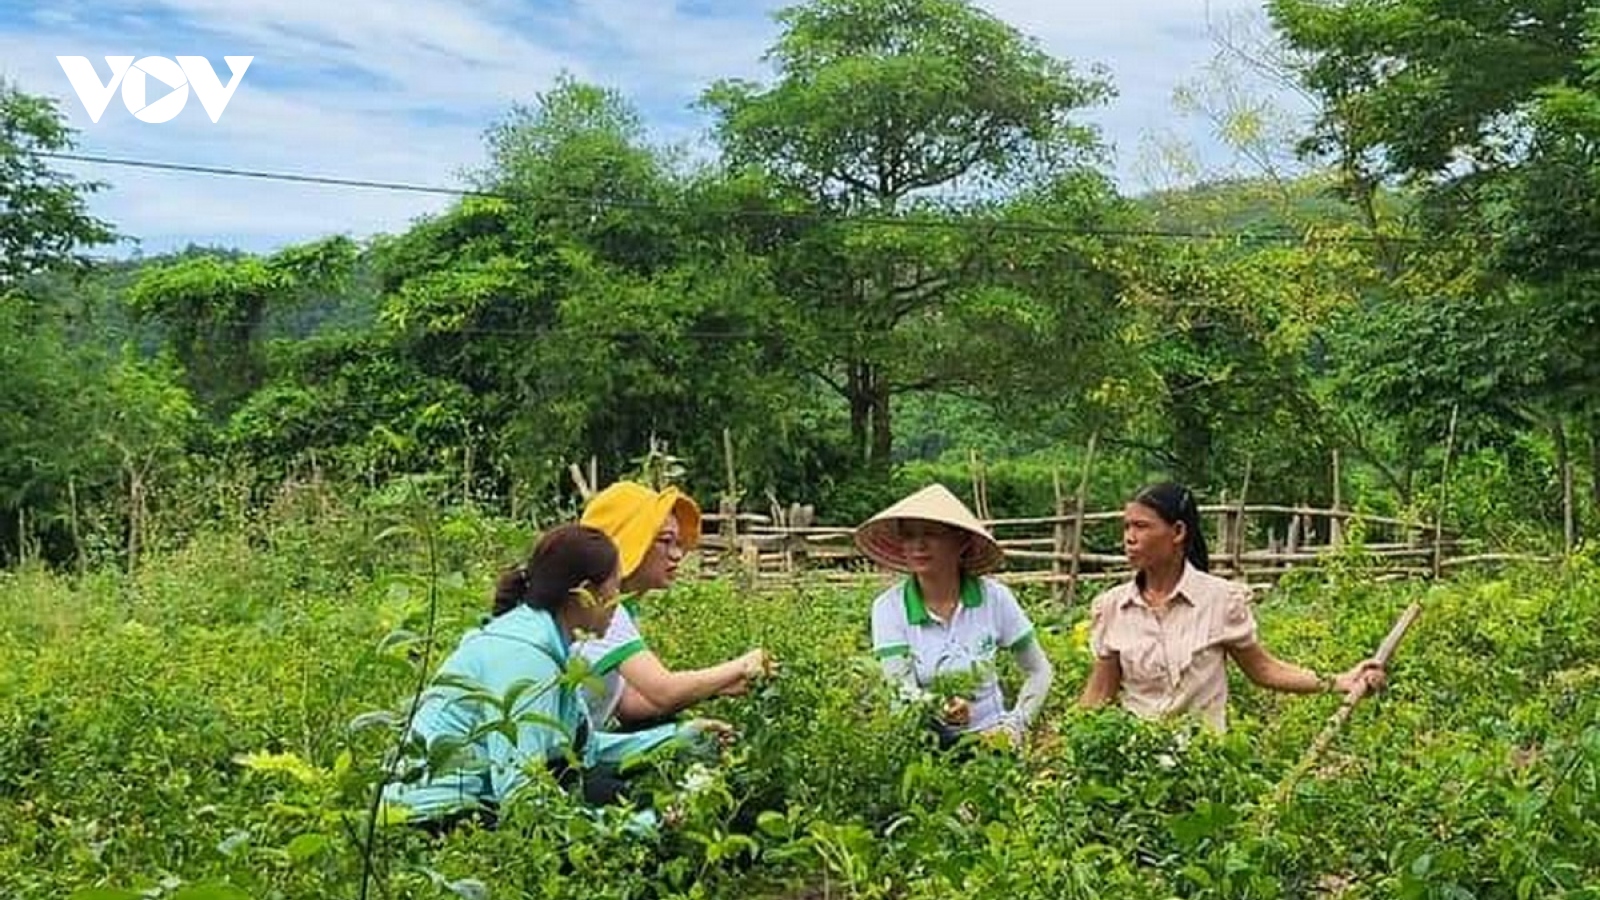 Sàn thương mại điện tử đưa nông sản Việt vươn ra thế giới